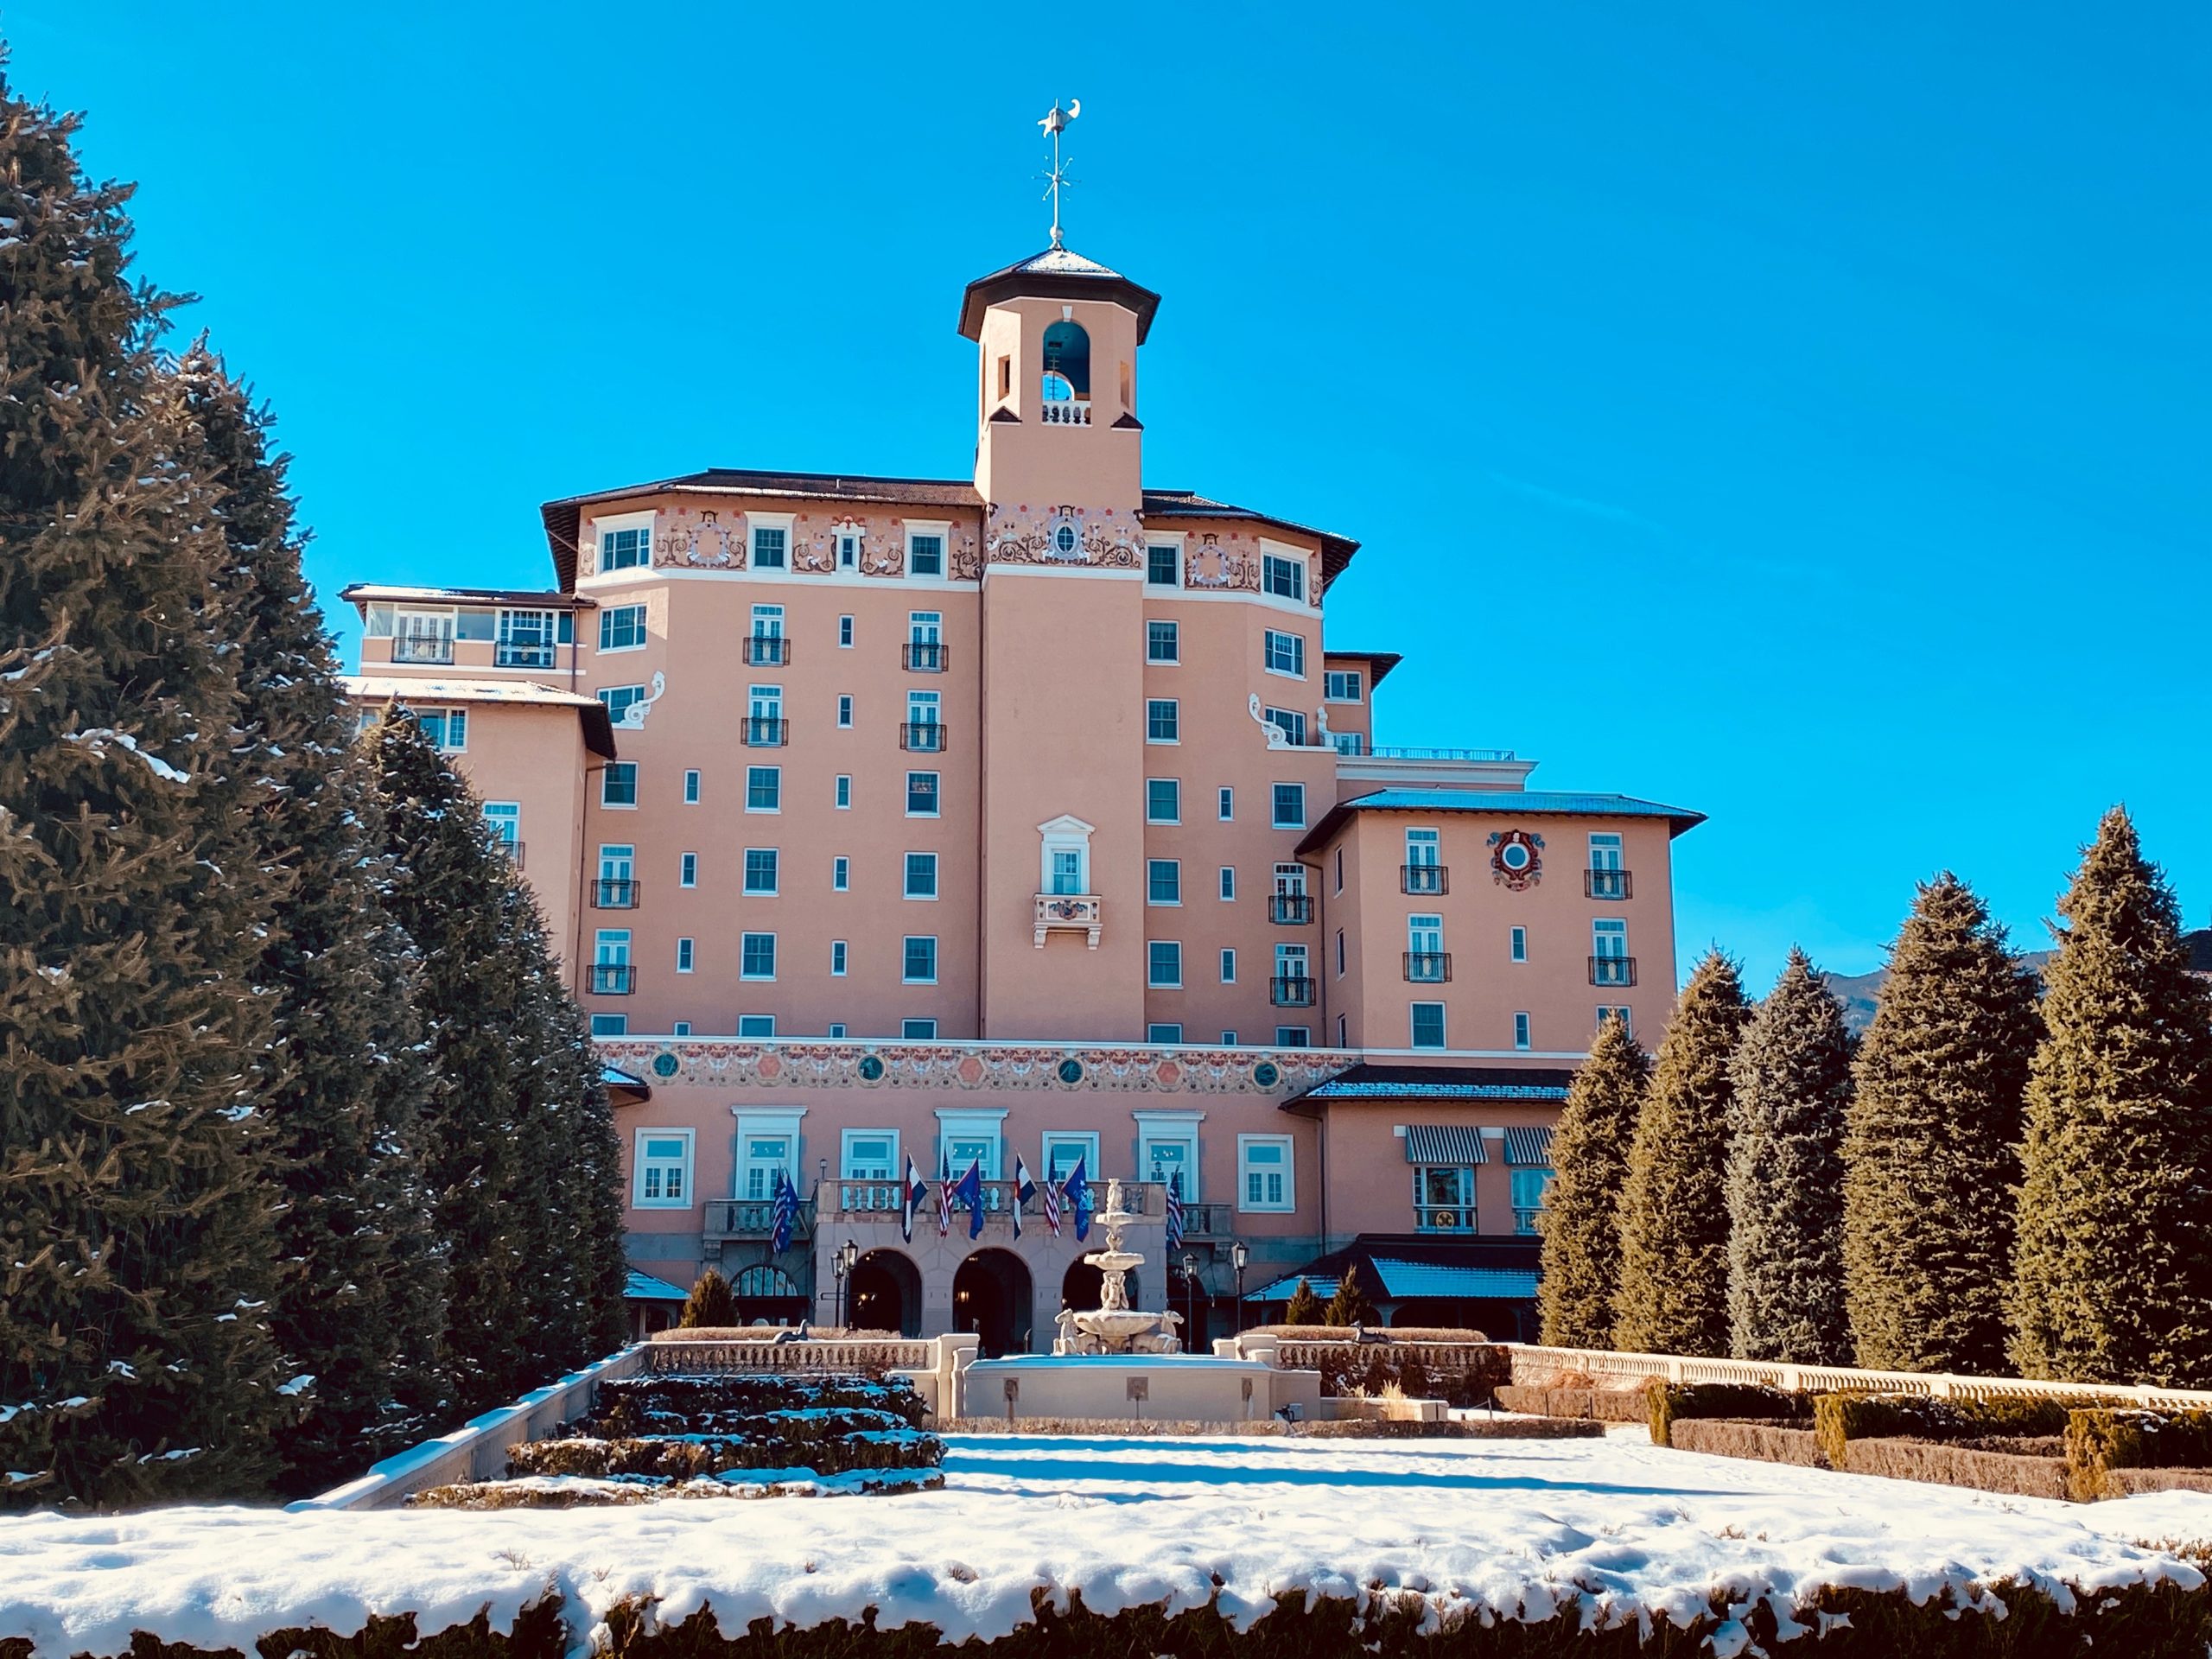 Historic Broadmoor Hotel in Colorado Springs, CO